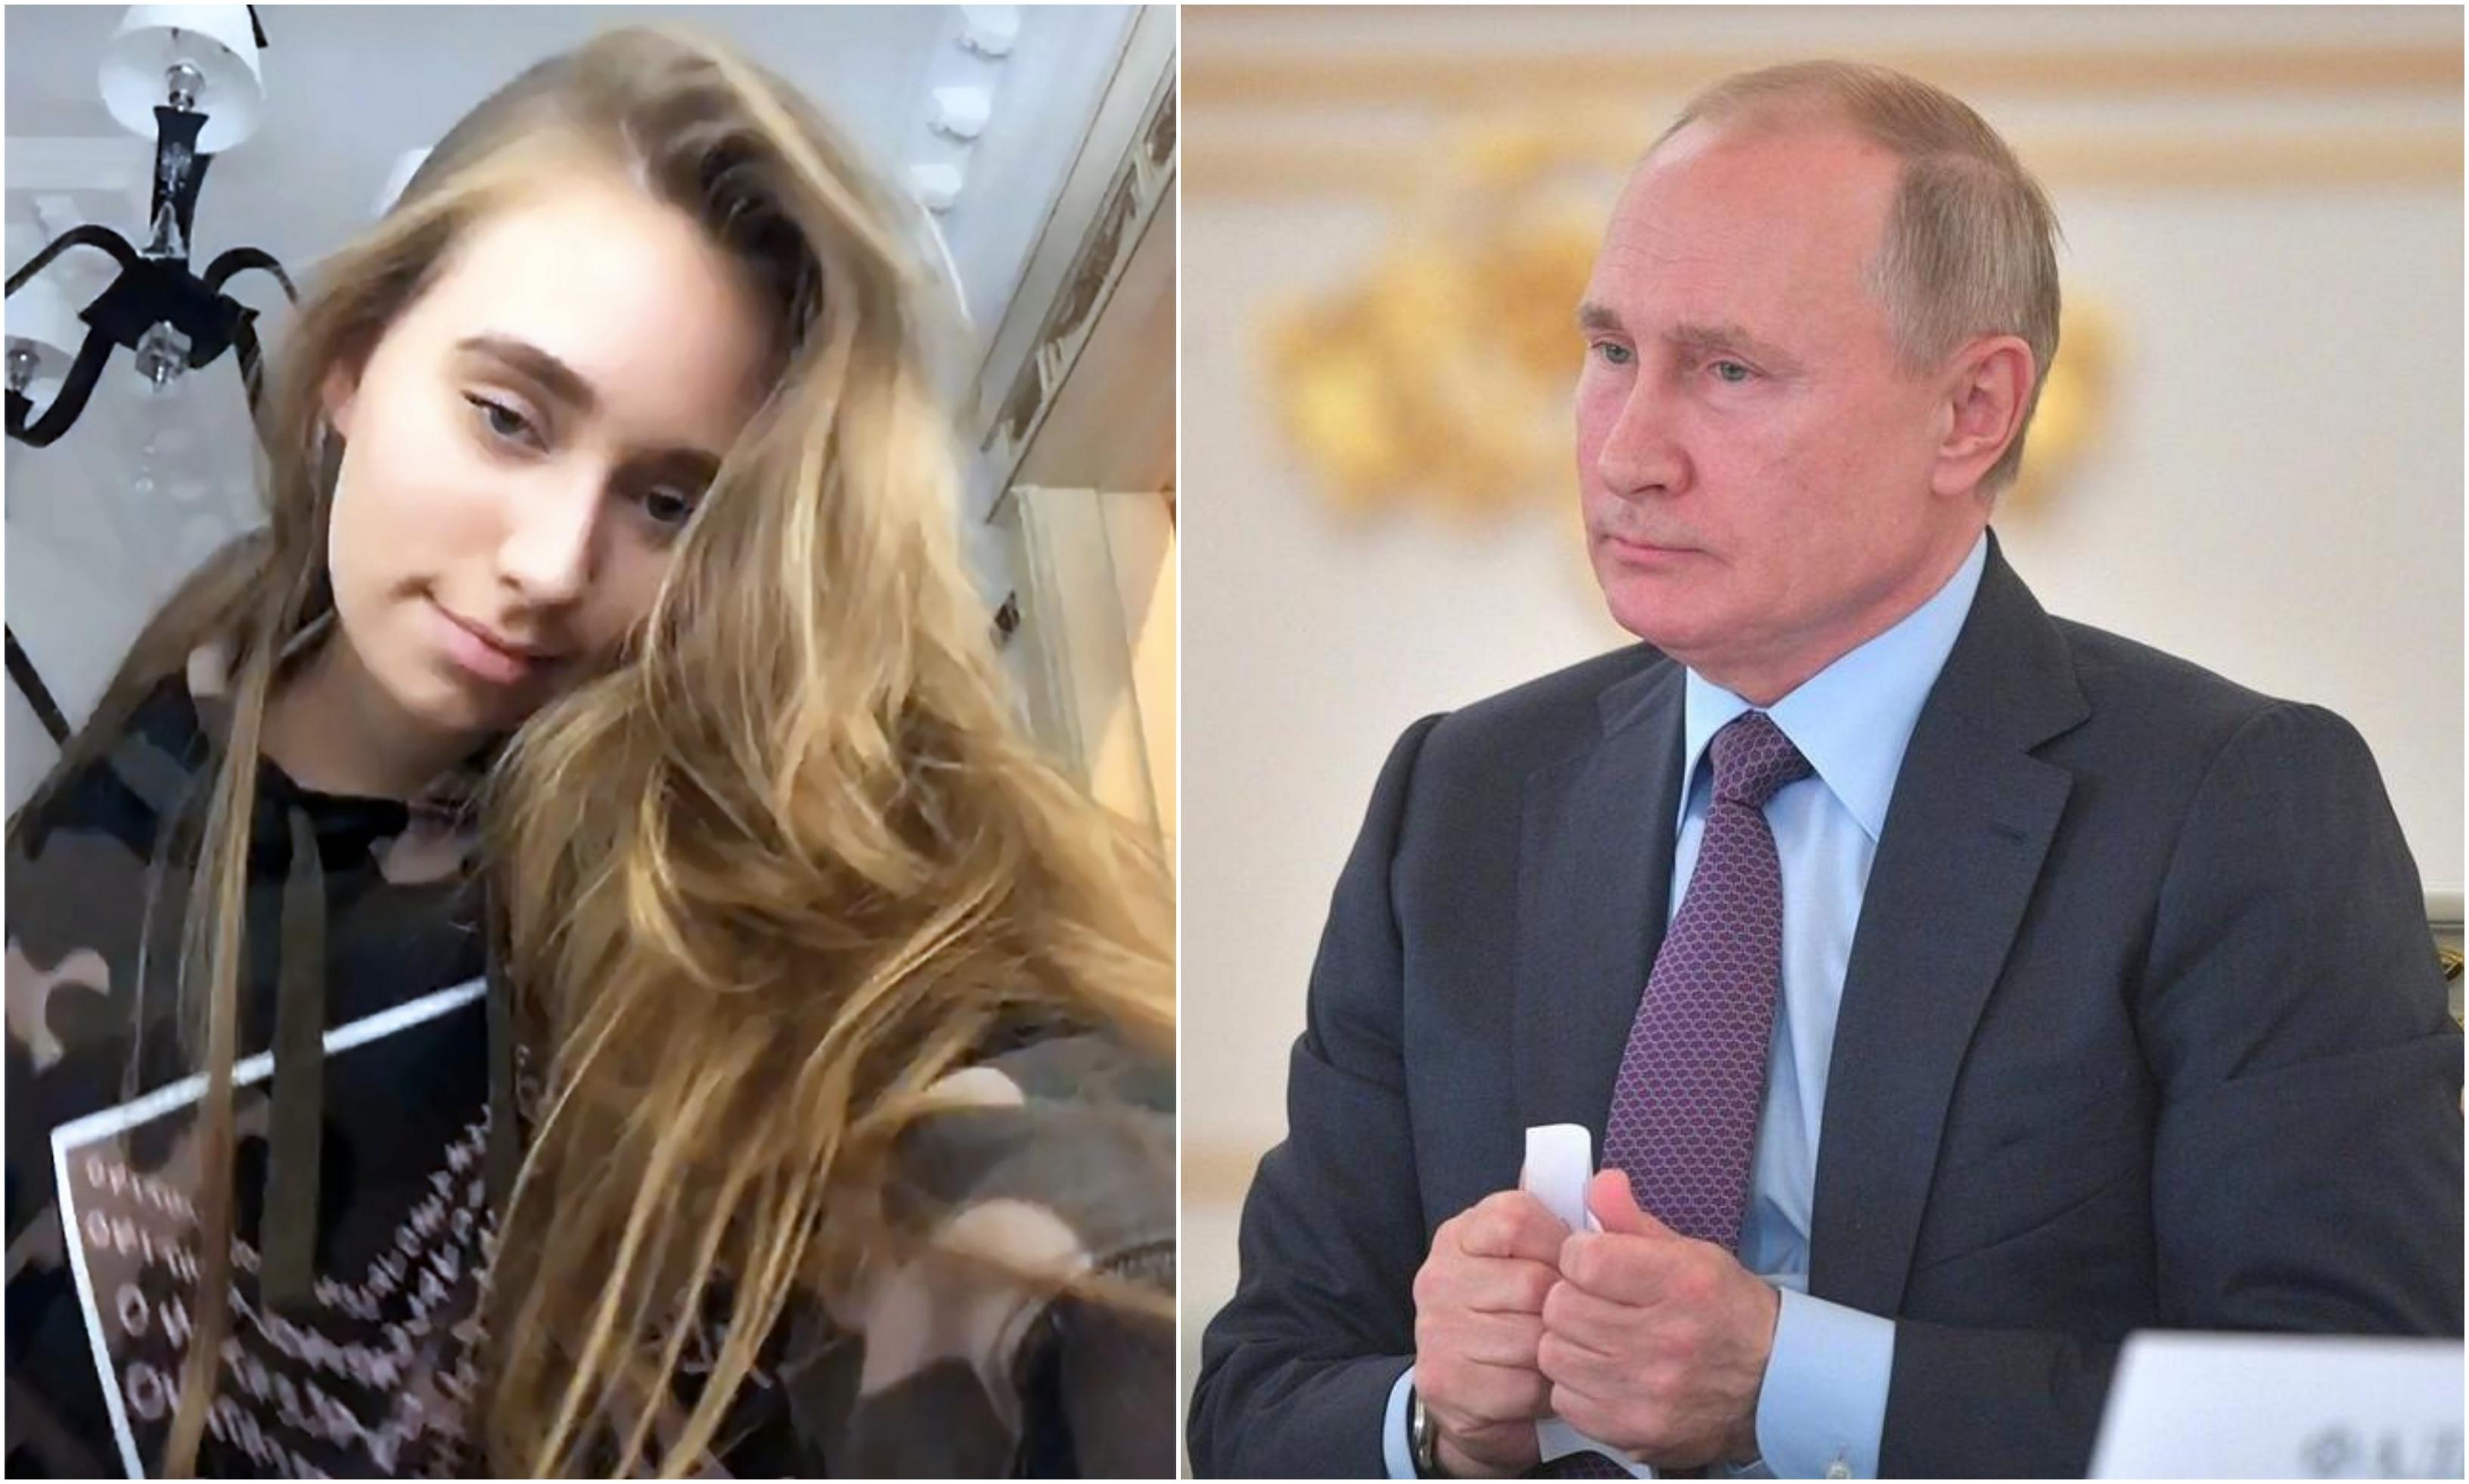 Acasă la fiica „secretă” a lui Putin